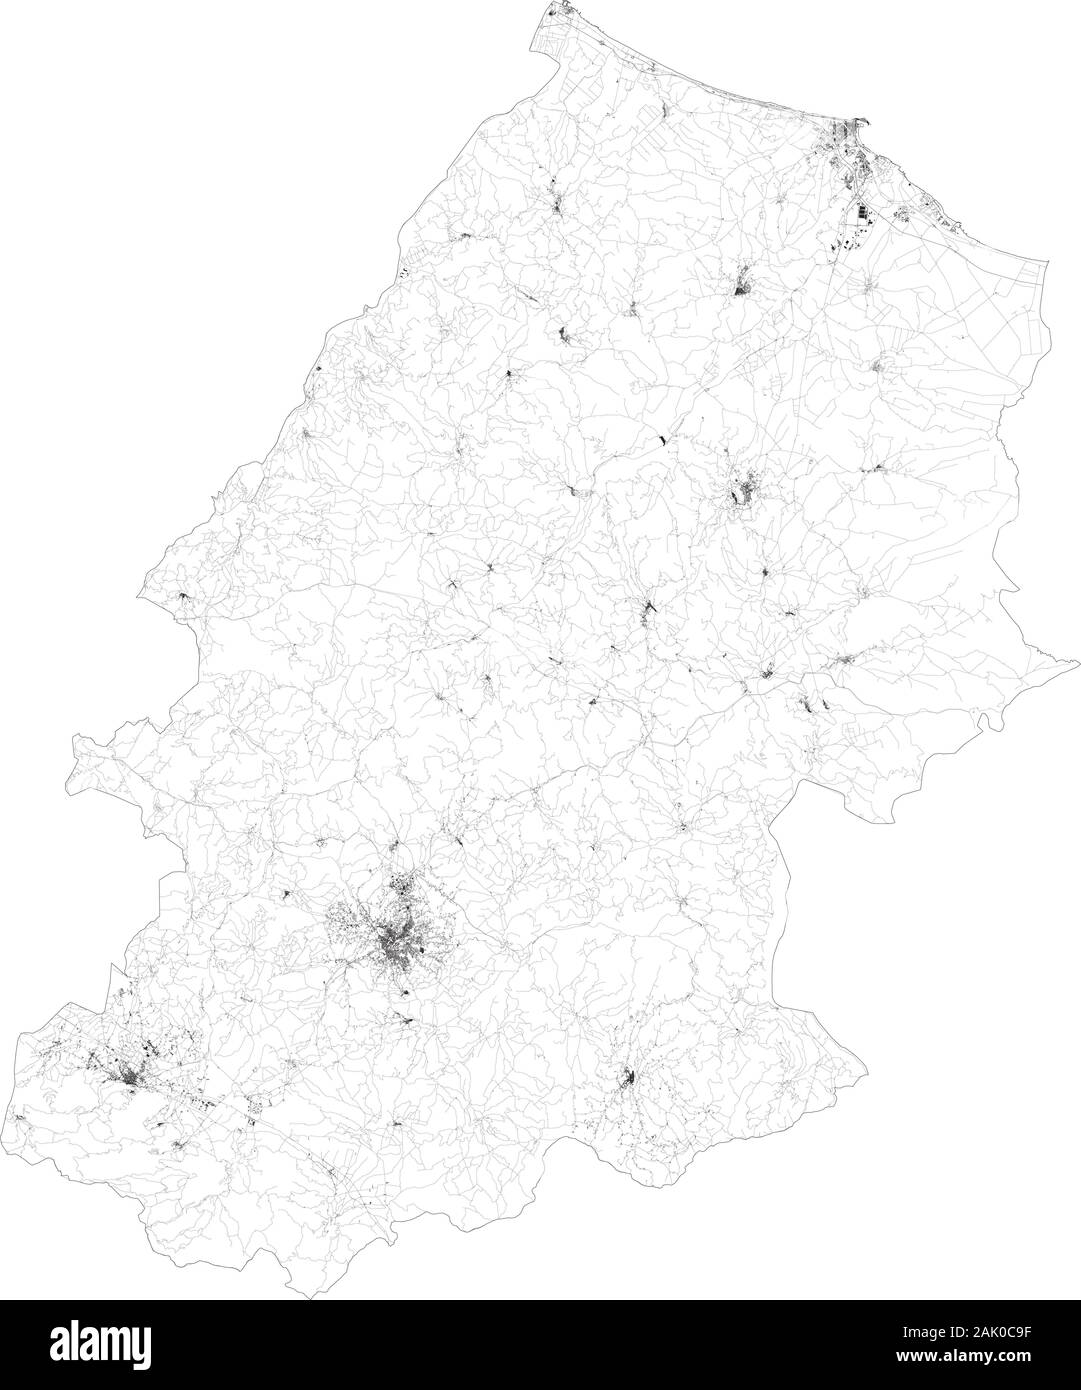 Sat-Karte der Provinz Campobasso Städte und Straßen, Gebäude und Straßen der Umgebung. Region Molise, Italien. Karte Straßen Stock Vektor